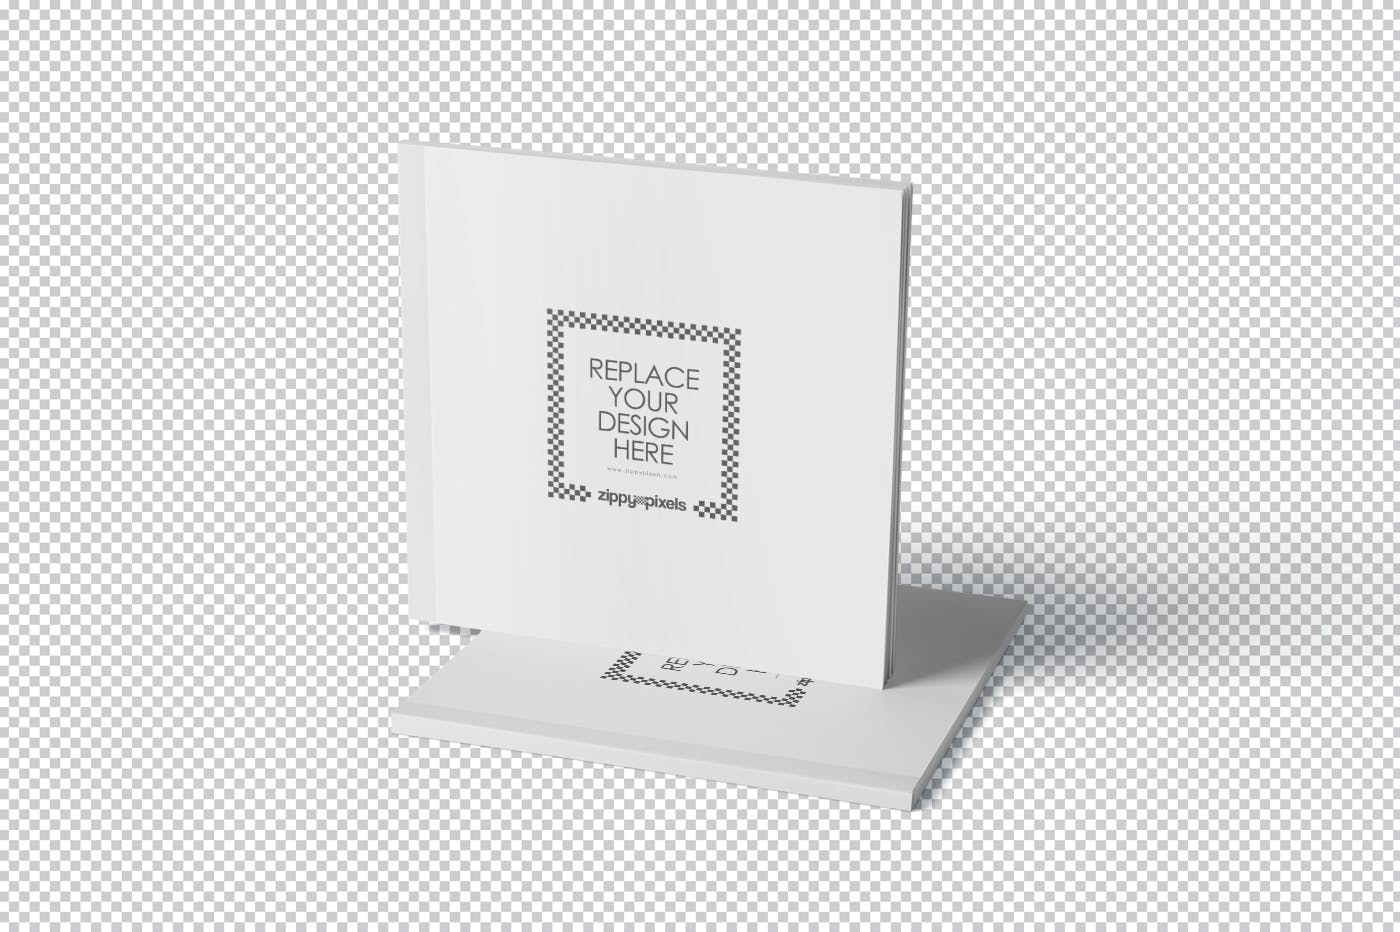 方形杂志印刷效果图样机蚂蚁素材精选PSD模板 Square Magazine Mockup Set插图(5)